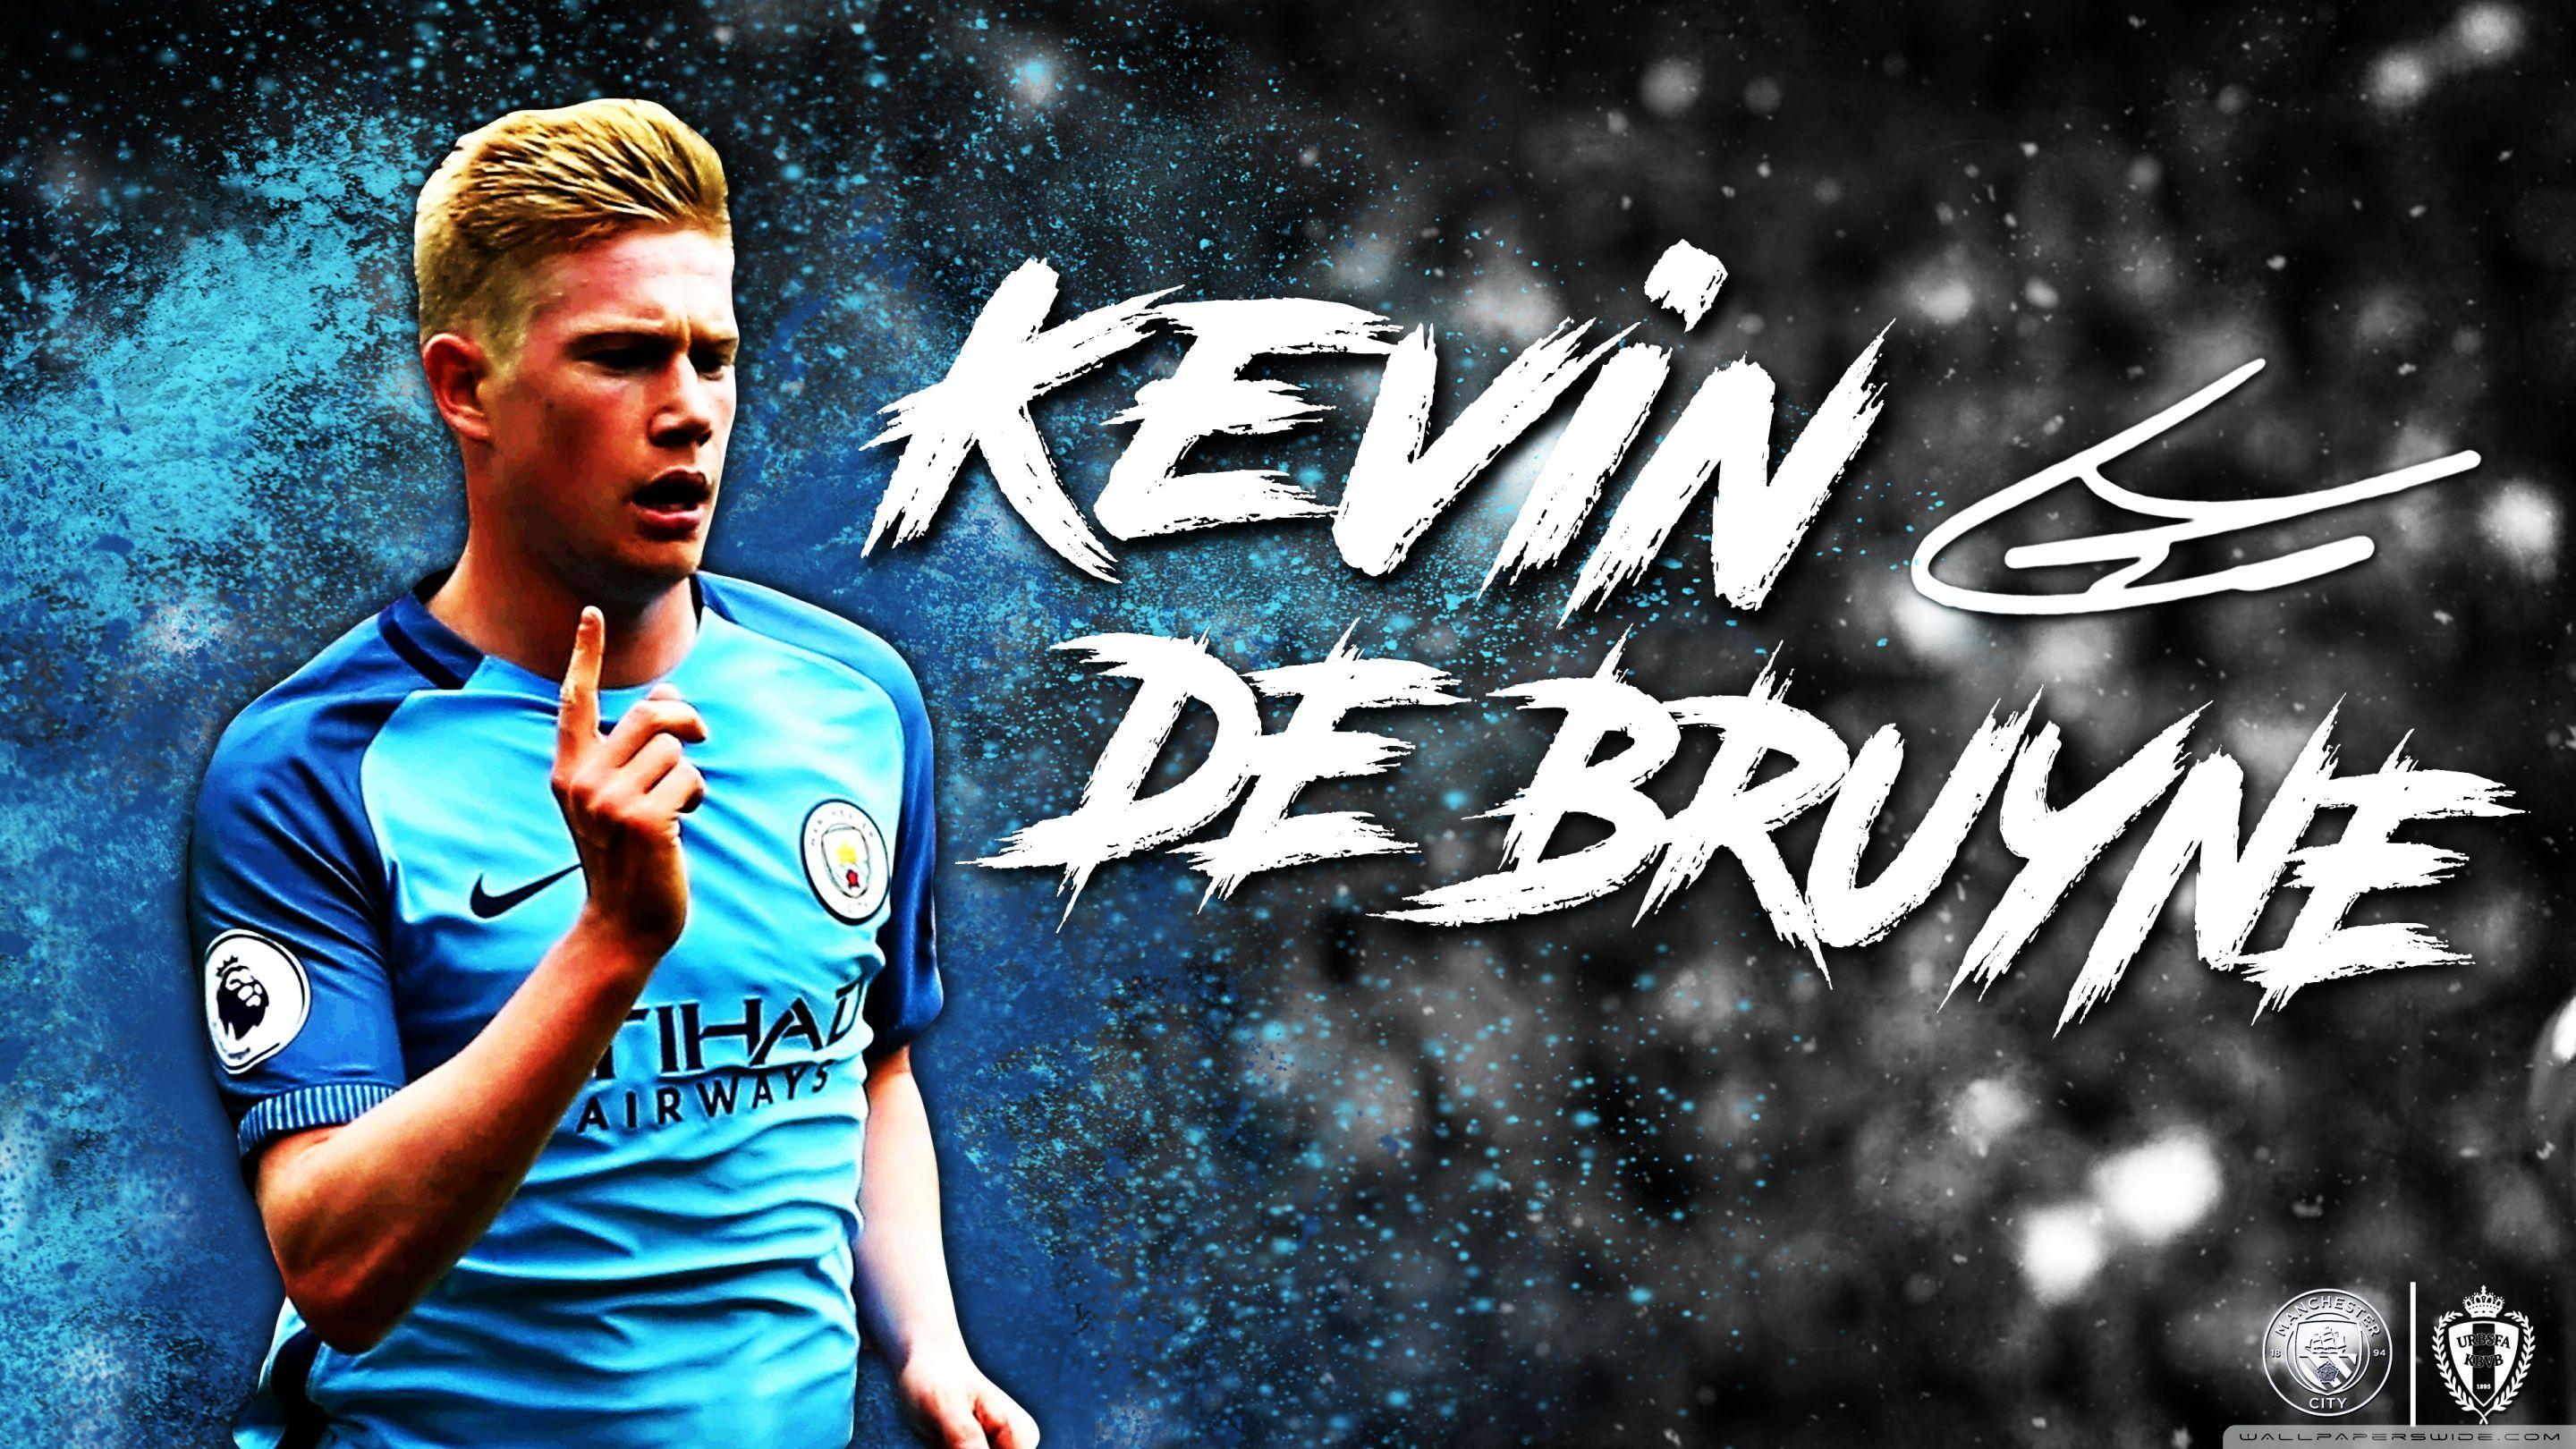 Kevin De Bruyne Manchester City HD desktop wallpaper, High